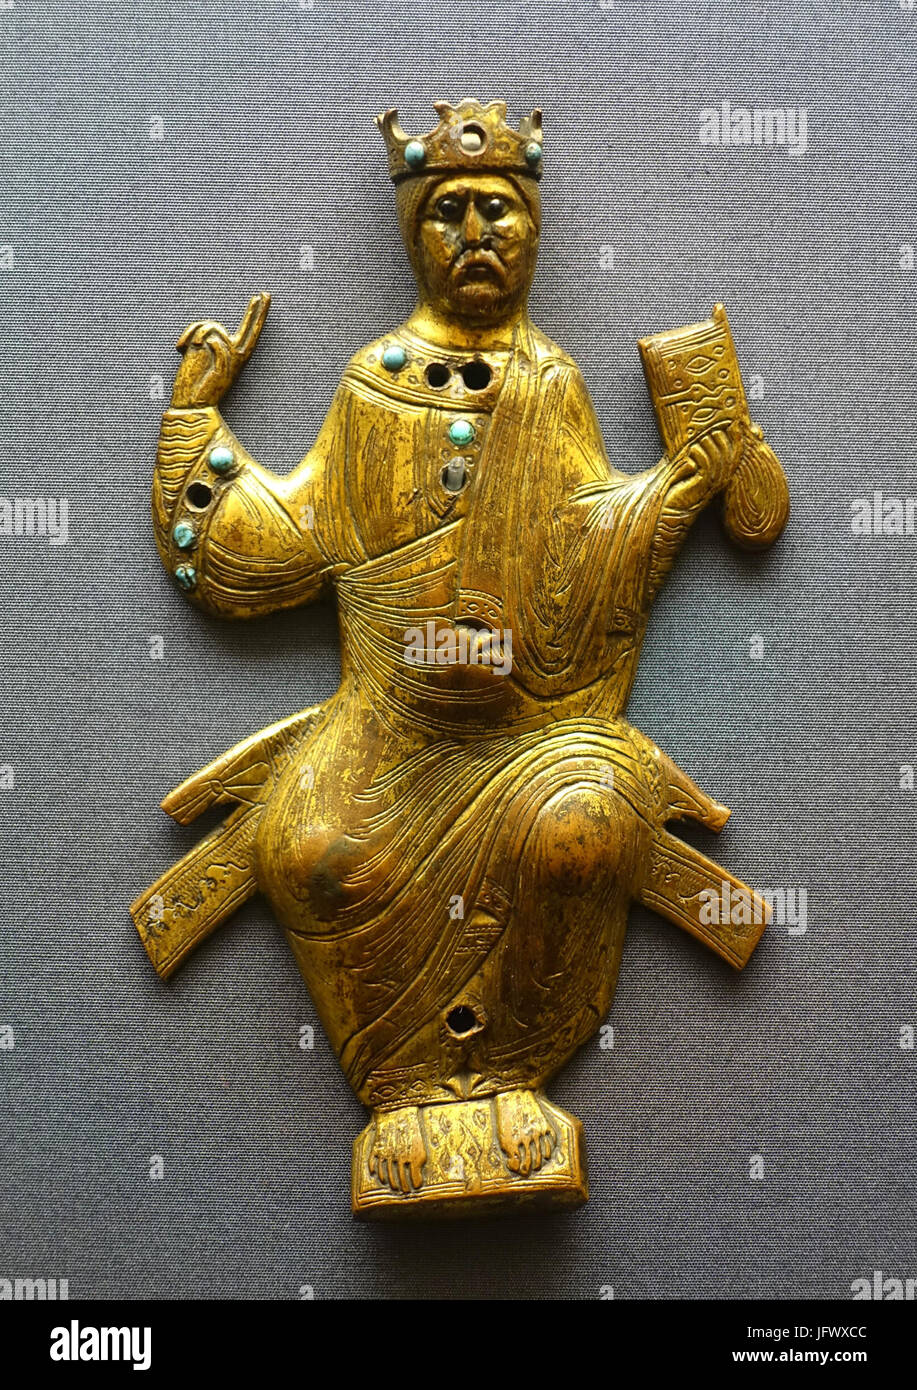 Cristo in trono, placca da un oggetto liturgico, Limoges, del XII secolo, bronzo con smalto, turchesi - Museo Schnütgen - Colonia, Germania - DSC09989 Foto Stock